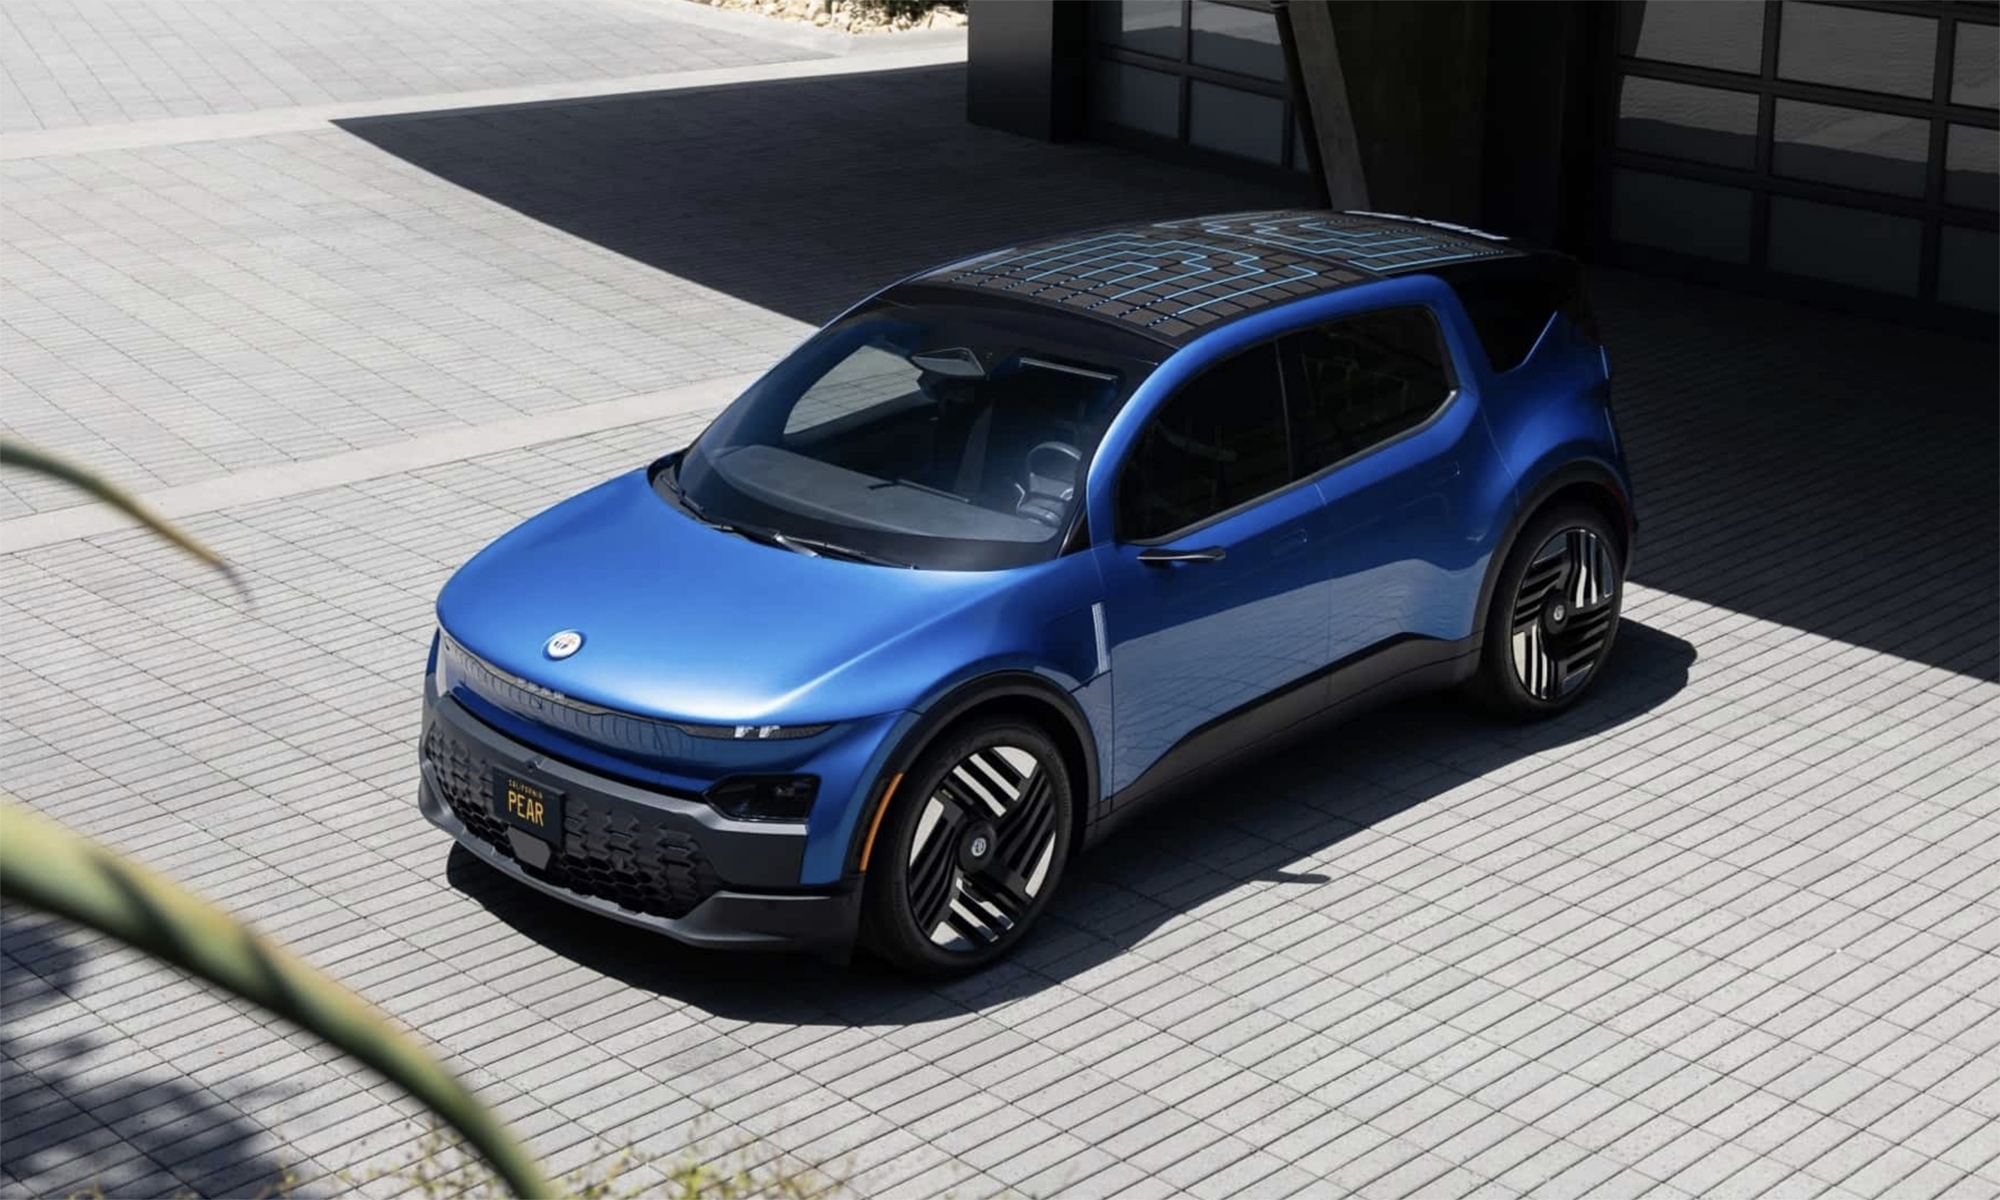 Fisker introducirá esta innovación en el que será su coche eléctrico más popular.